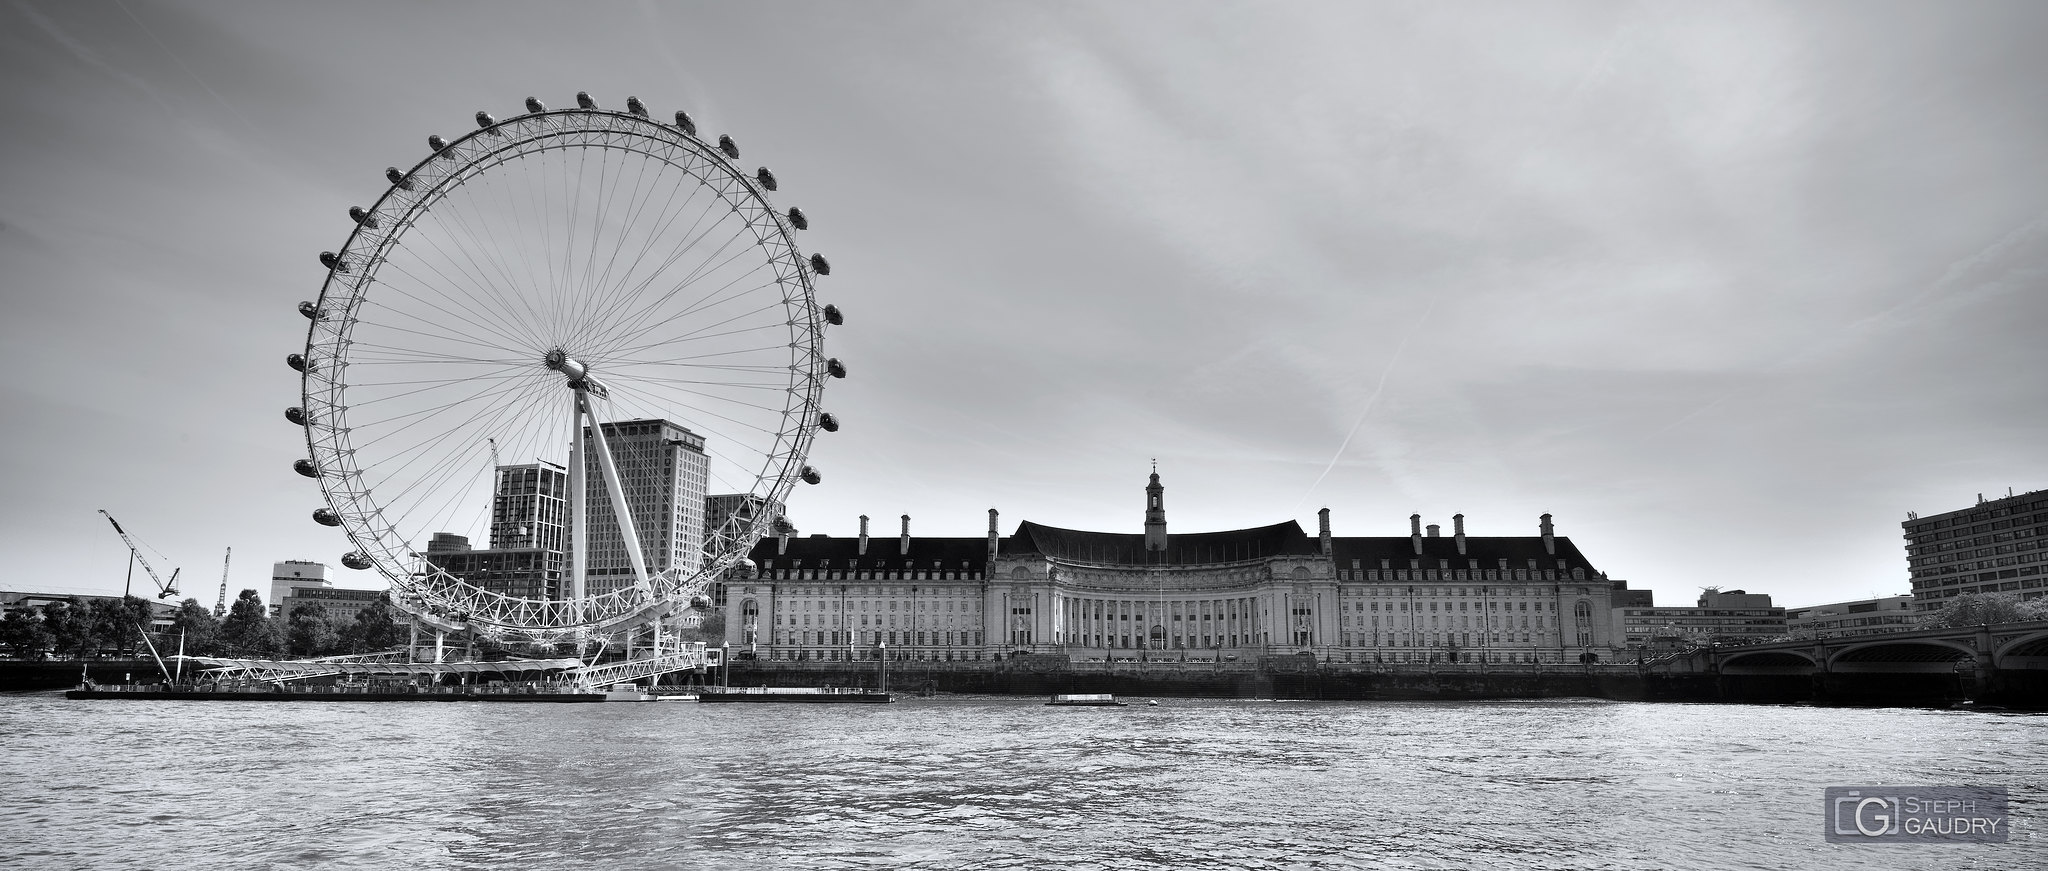 London Eye - London dungeon - Sea Life [Cliquez pour lancer le diaporama]